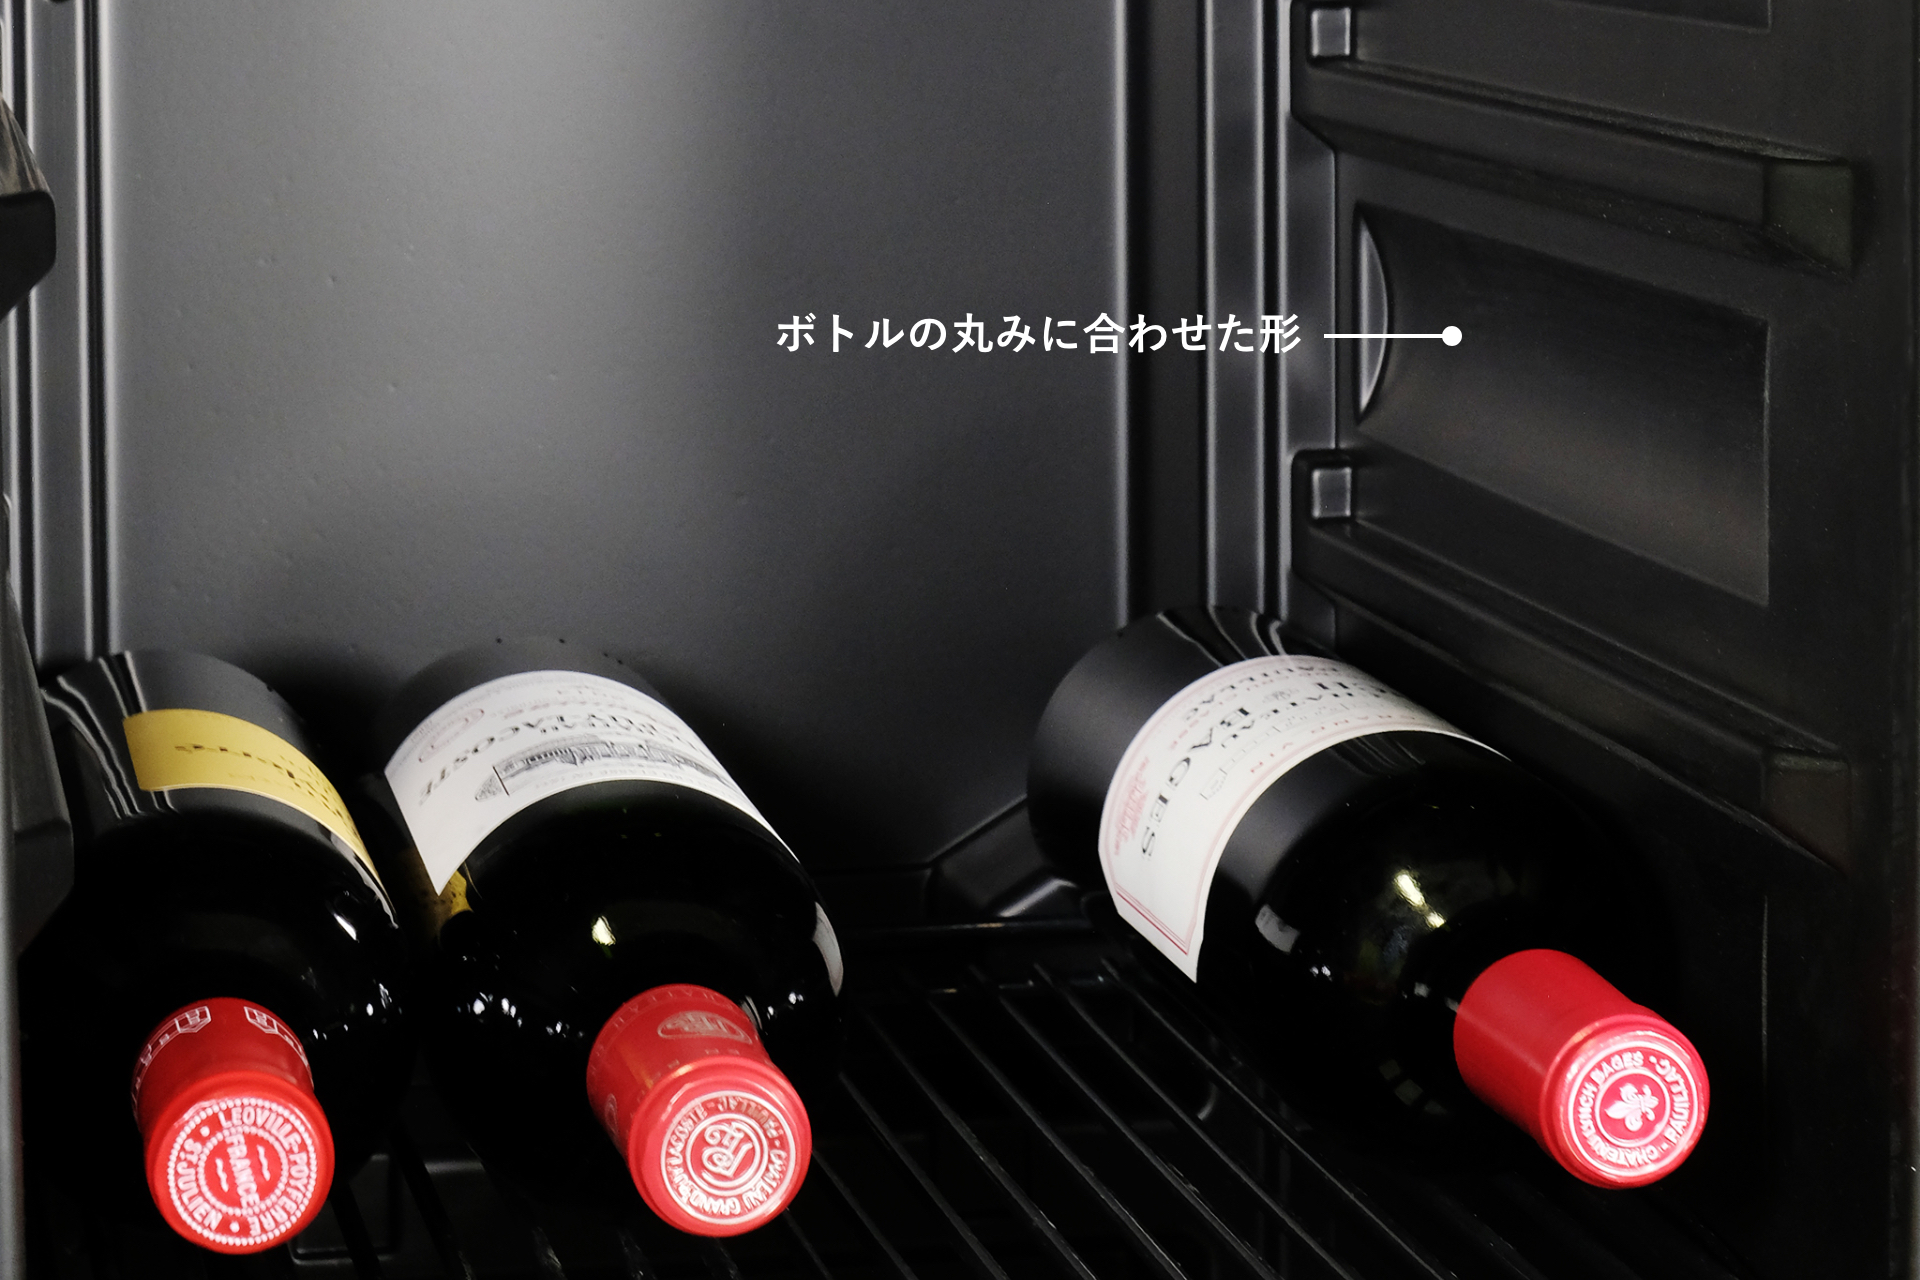 大人気! さくら製作所 SA38 ワインセラー 二温度管理式ワインセラー38本収納 低温冷蔵機能付 ZERO Advance ホワイト 